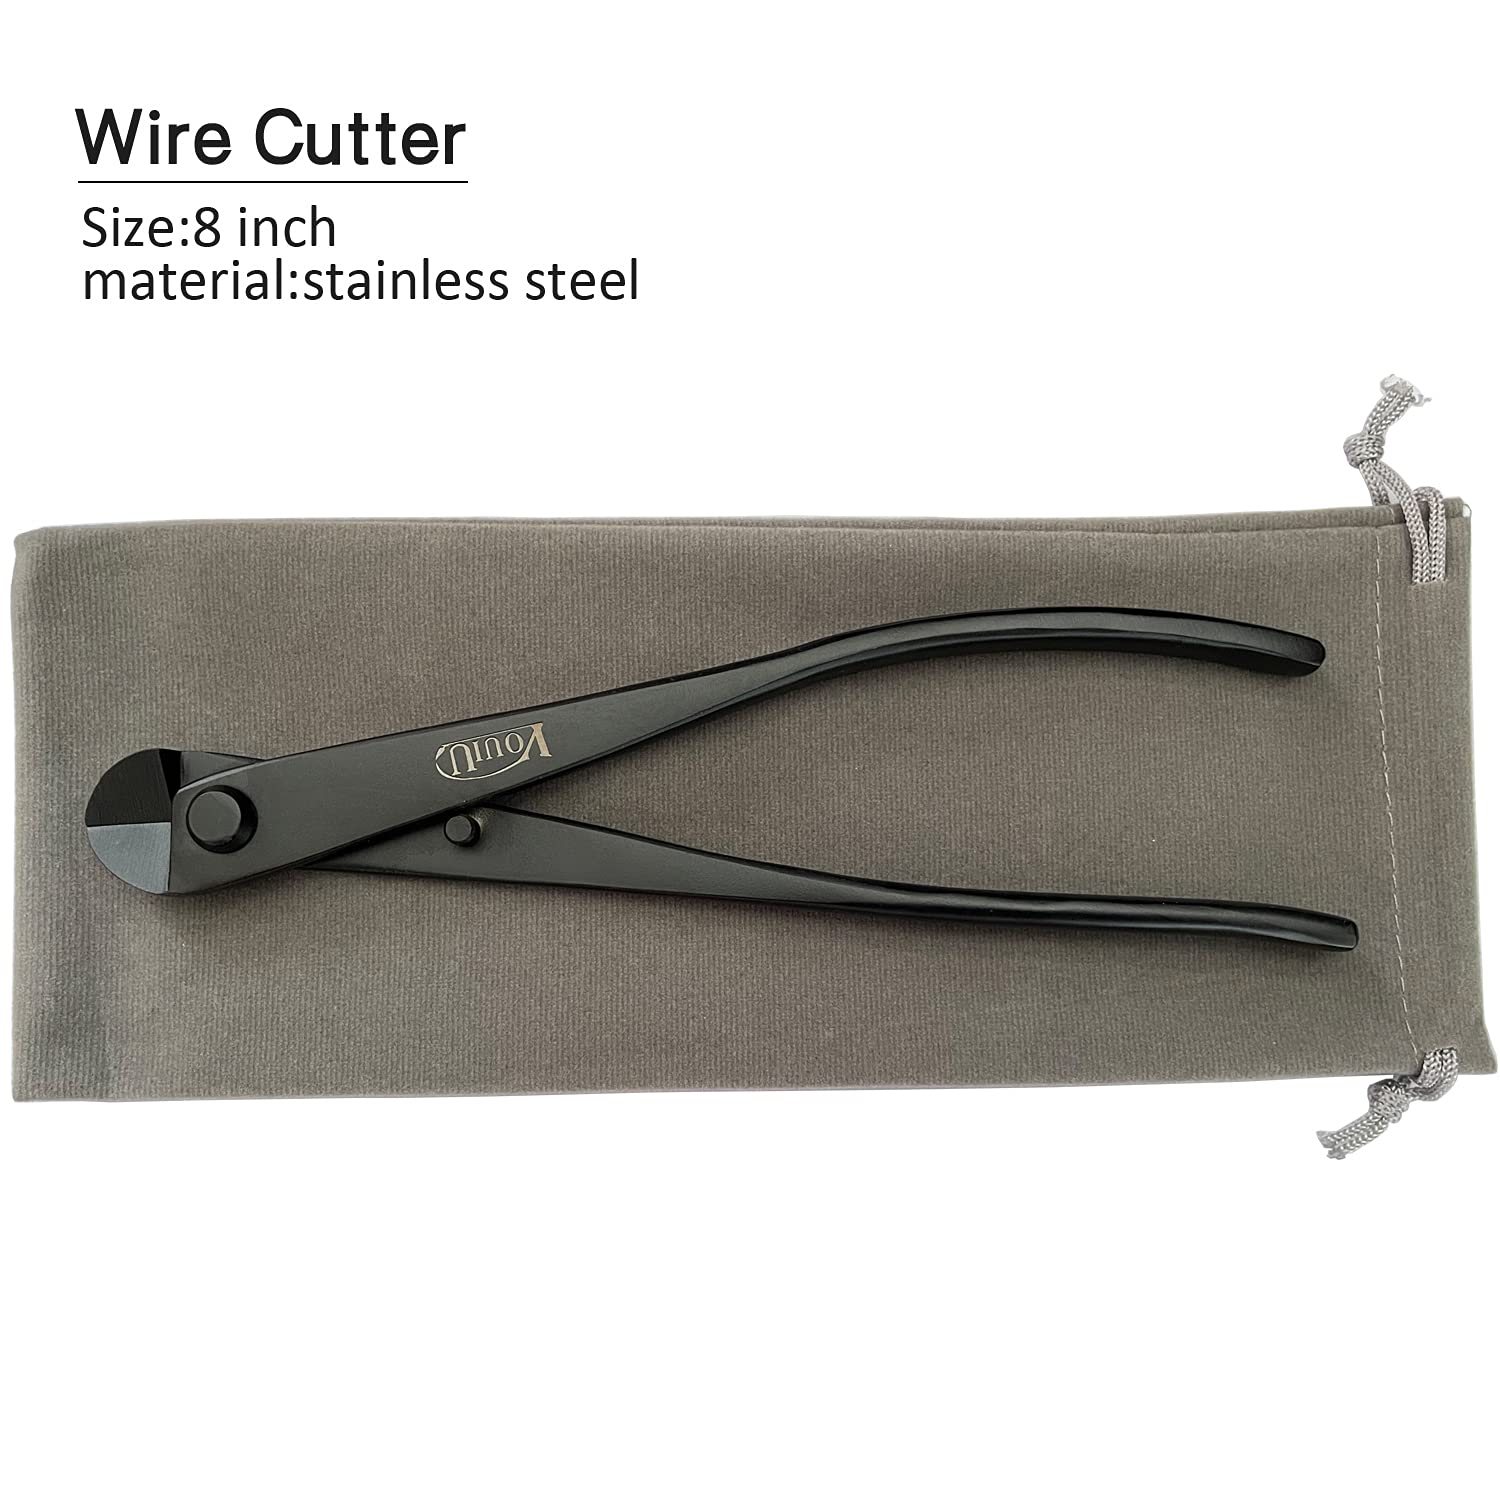 vouiu 8inch Wire Cutter Bonsai Tools Black